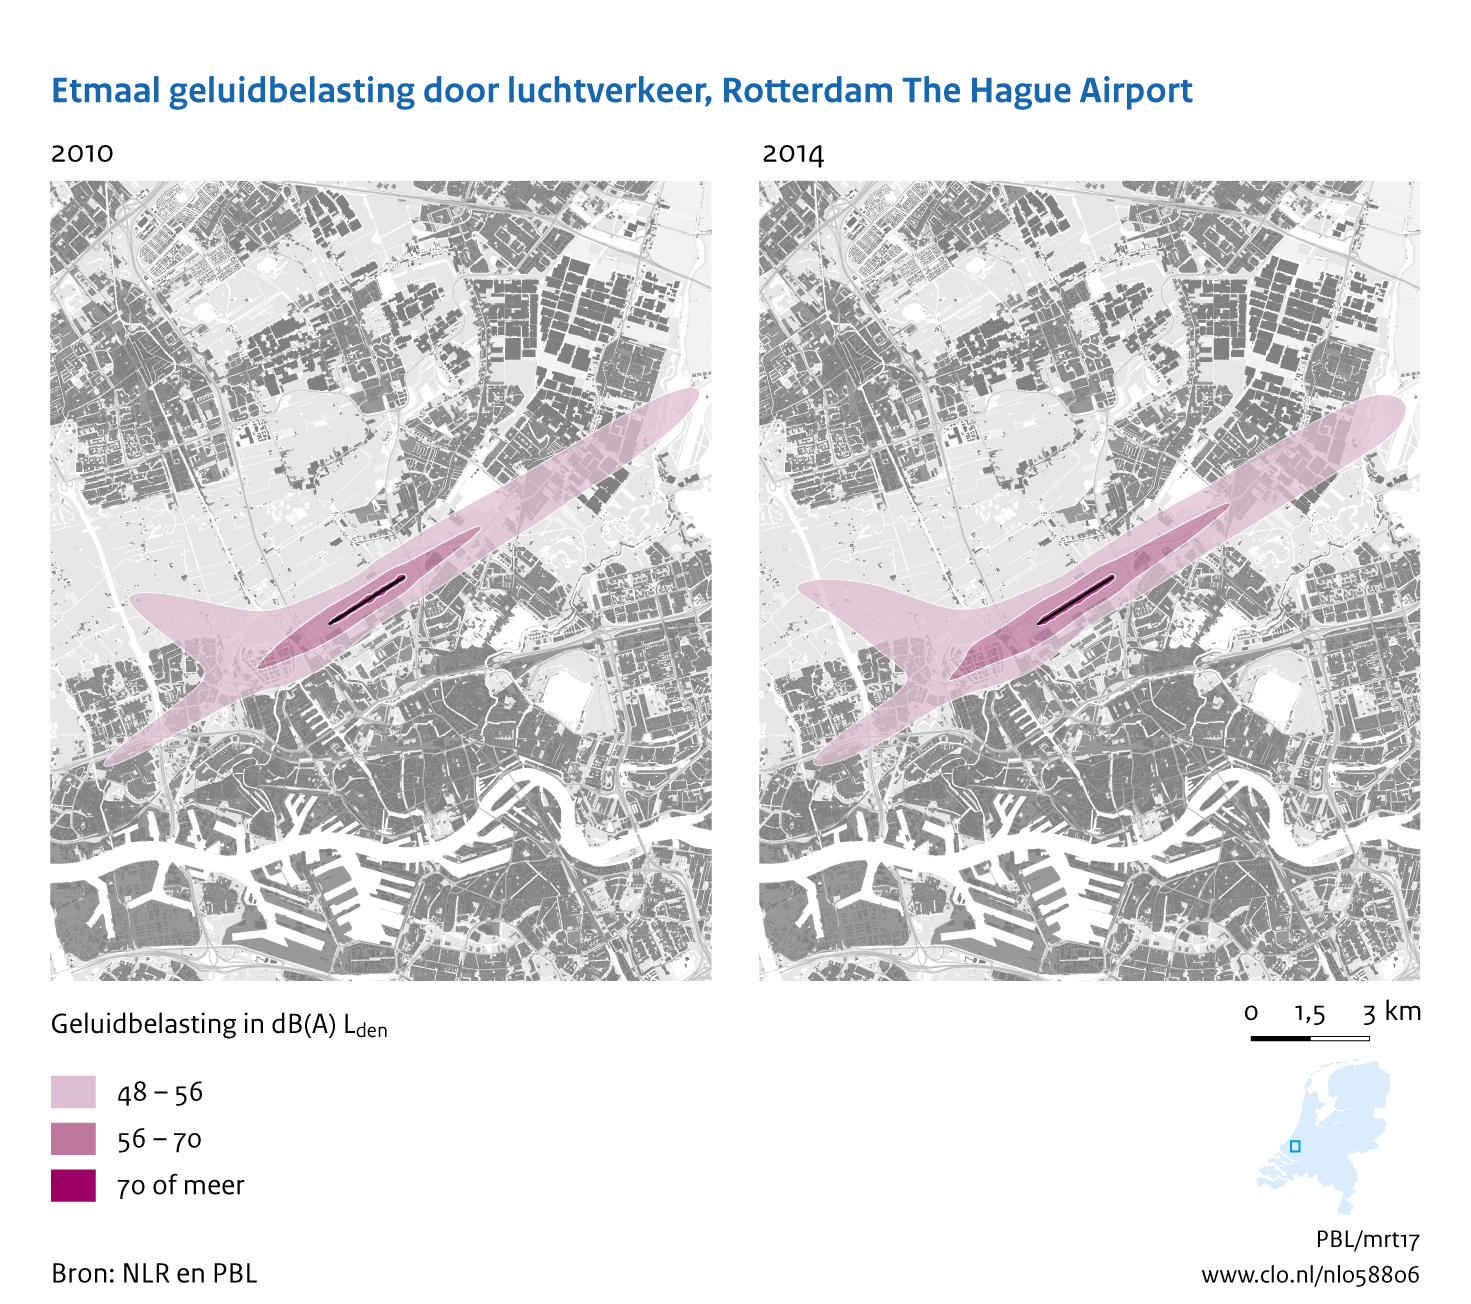 Figuur Etmaal geluidbelasting door luchtvaart, Rotterdam The Hague Airport, 2010-2014. In de rest van de tekst wordt deze figuur uitgebreider uitgelegd.